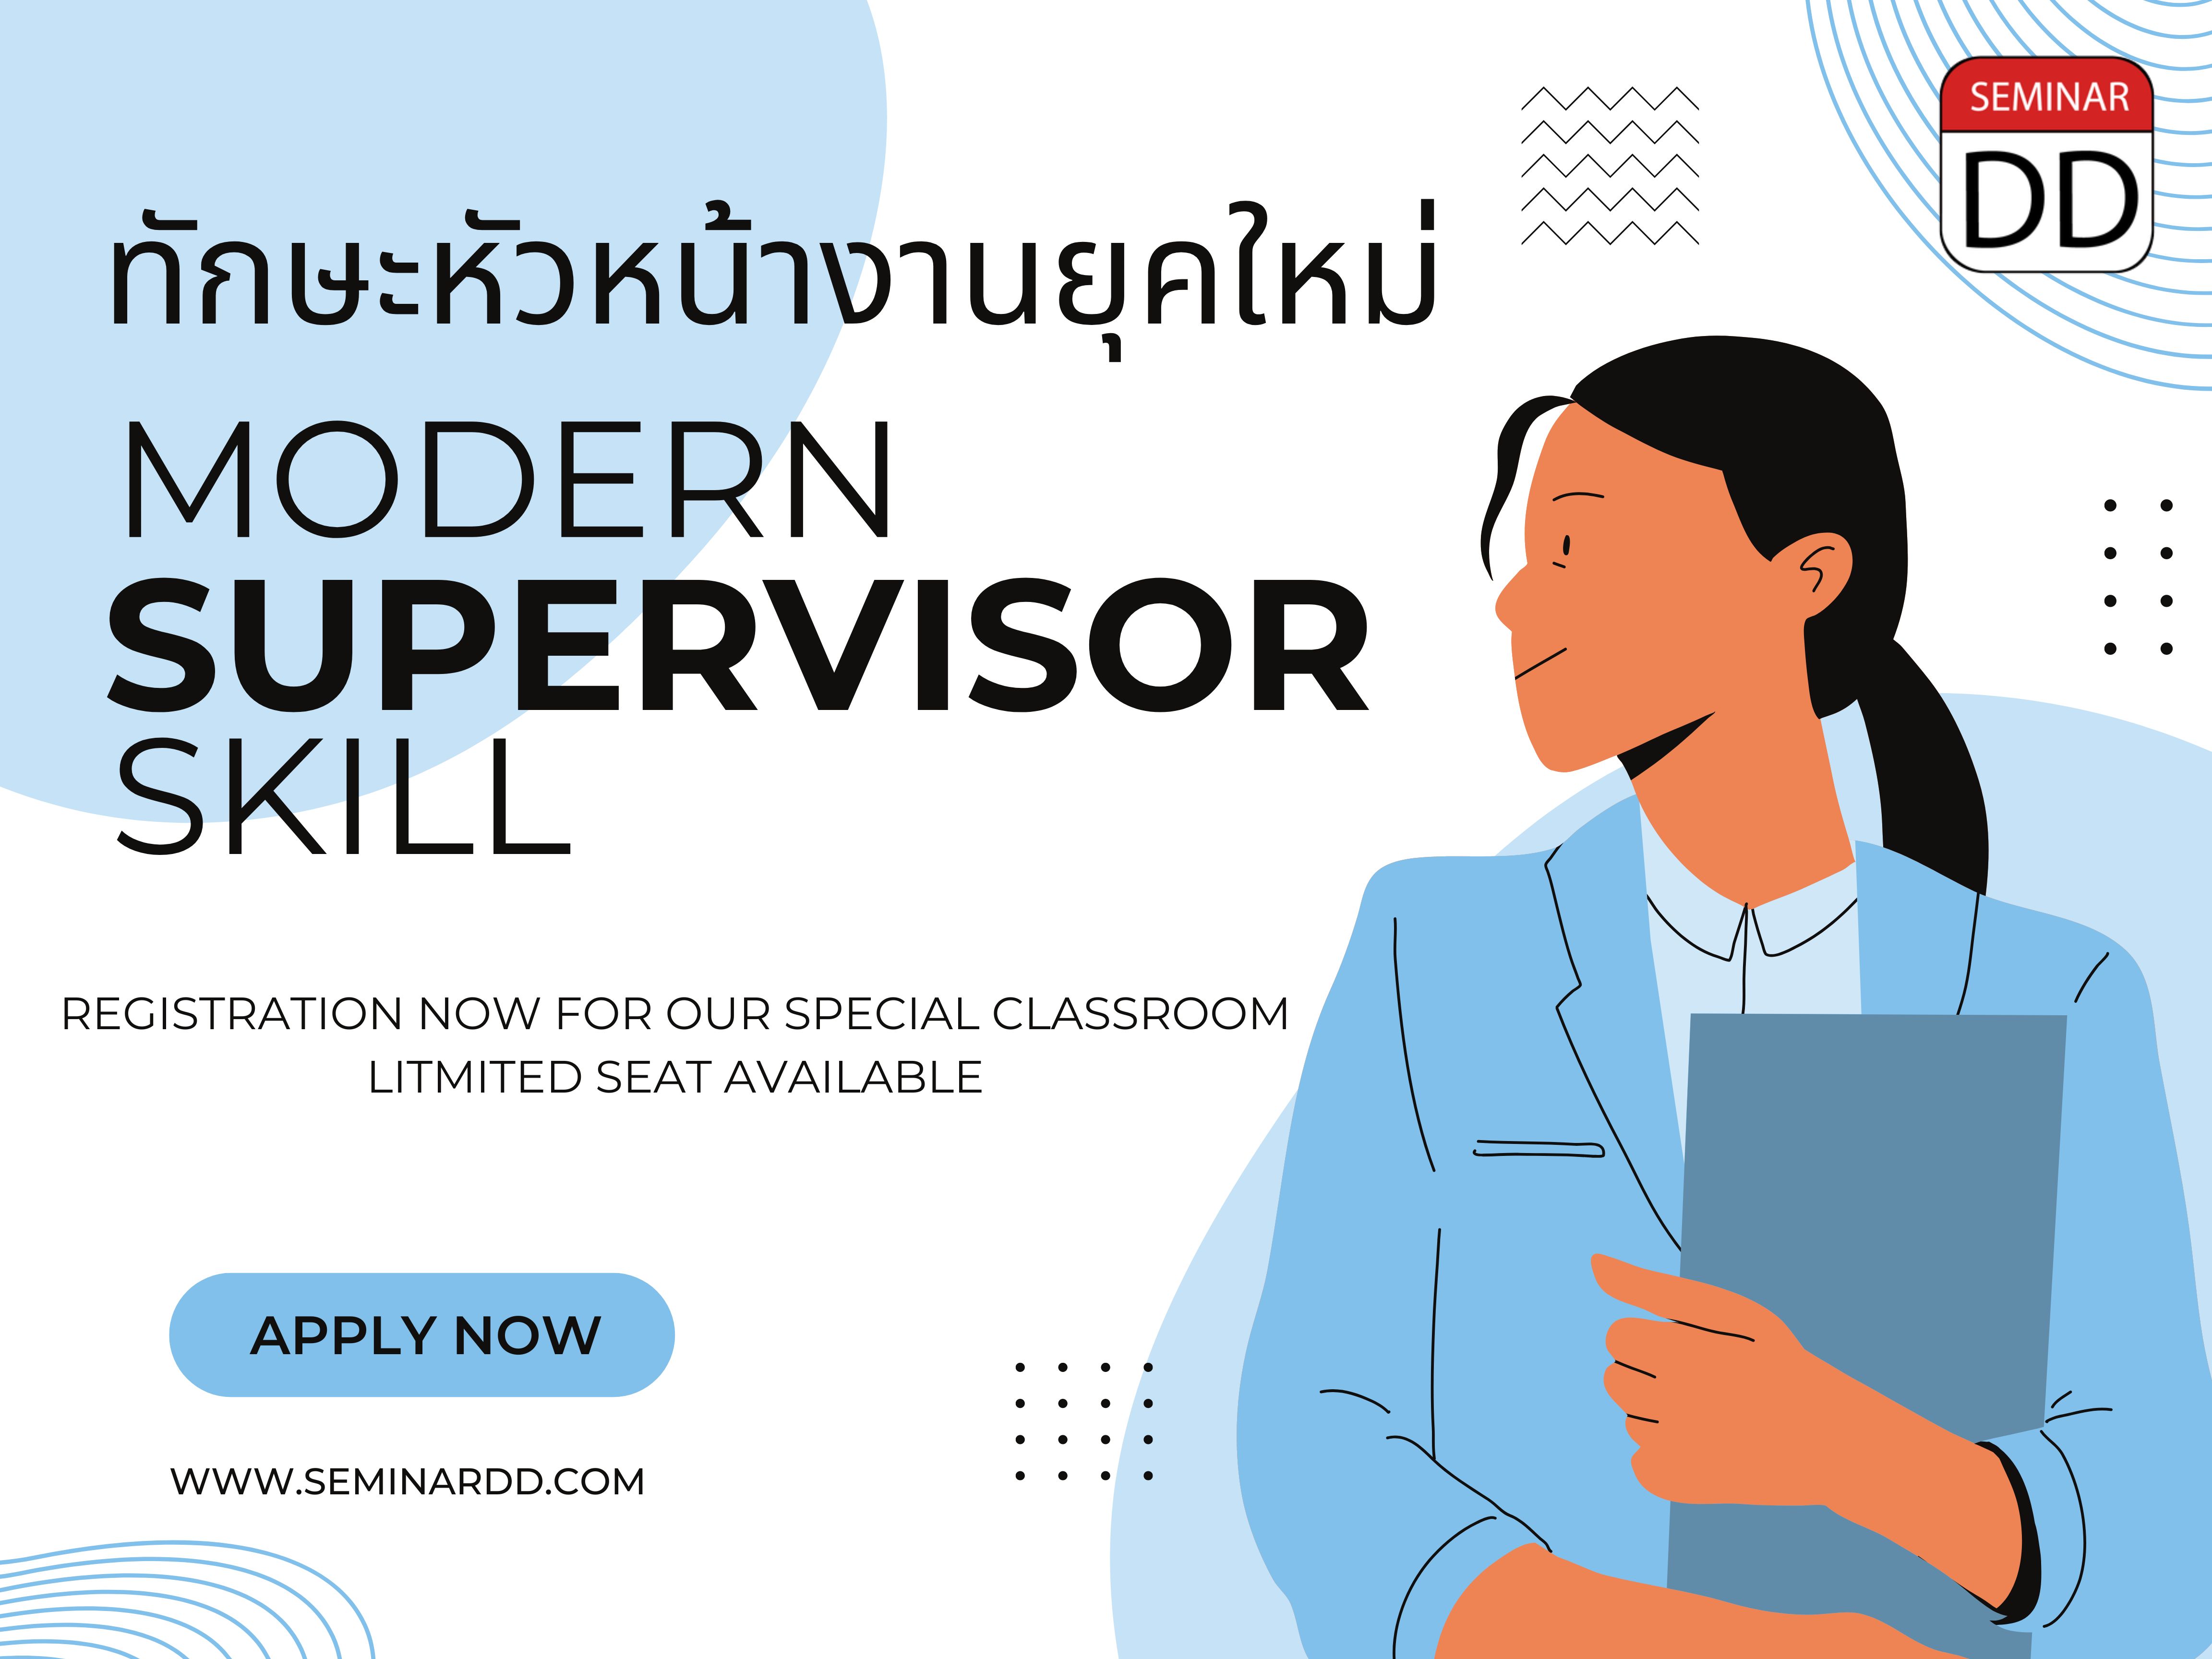 หลักสูตร ทักษะของหัวหน้างานยุคใหม่ (Modern Supervisor Skill)